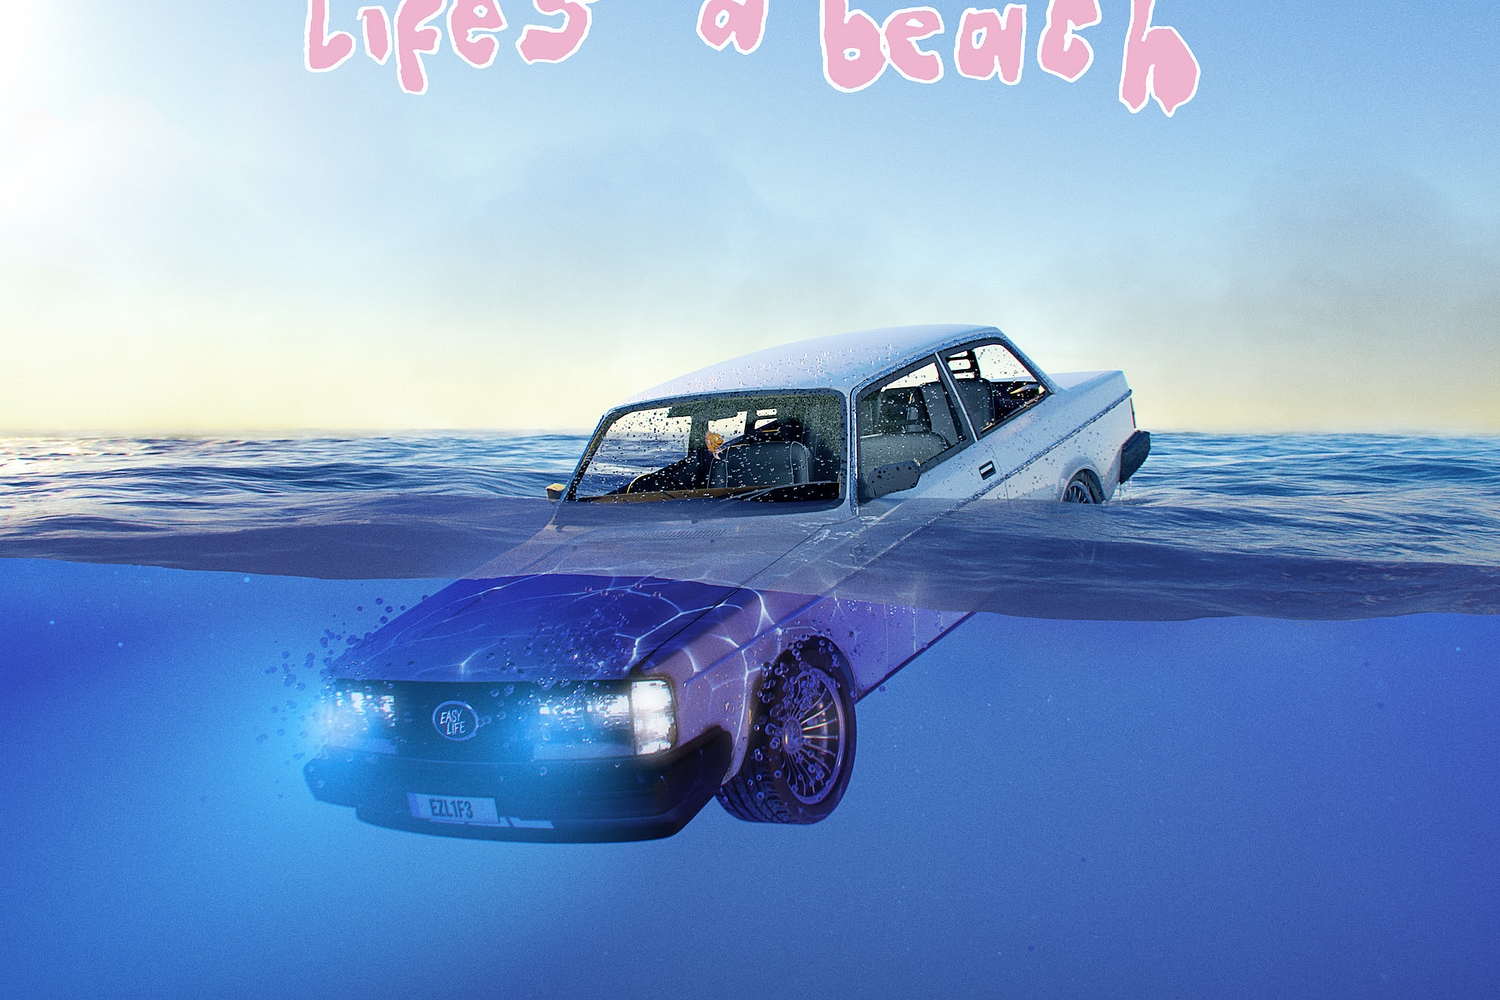 Easy Life - life’s a beach